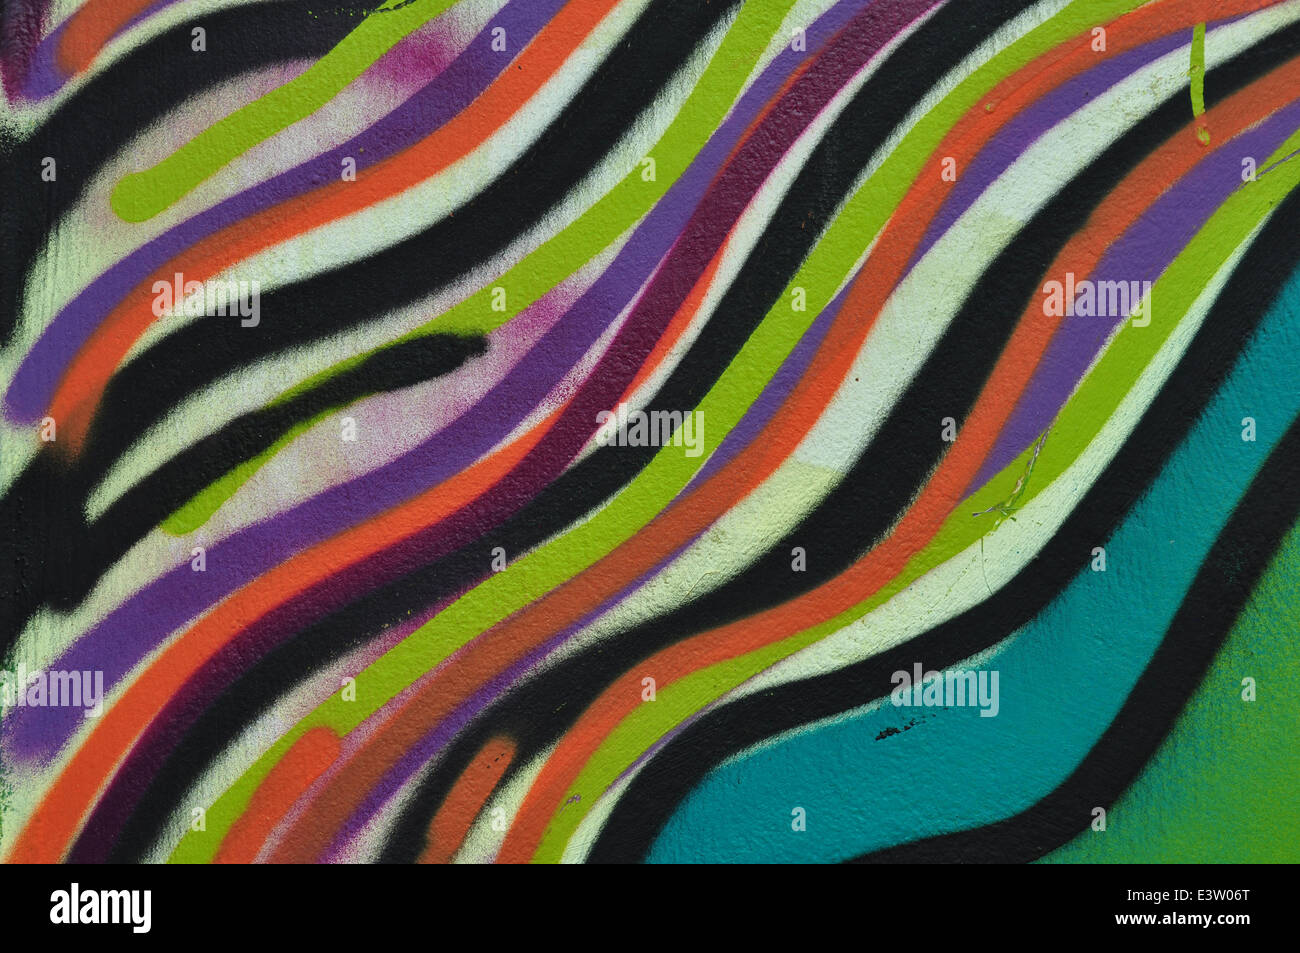 Abstract linee colorate pattern background artistico. Graffiti vernice spray sulla parete texture. Foto Stock